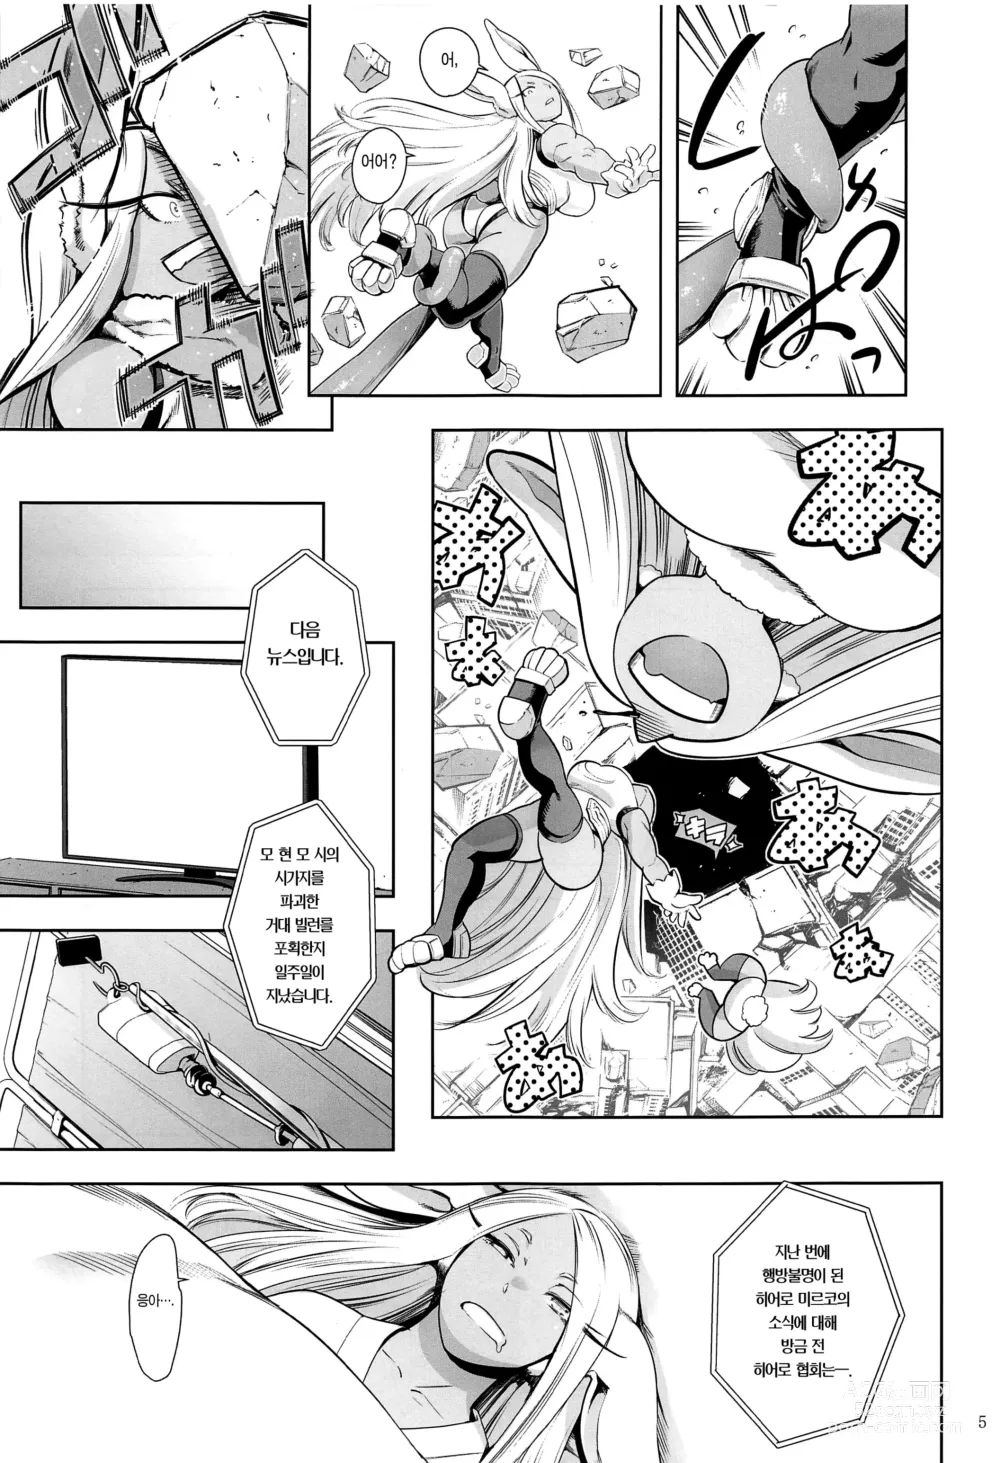 Page 4 of doujinshi 지명은 토끼입니까?